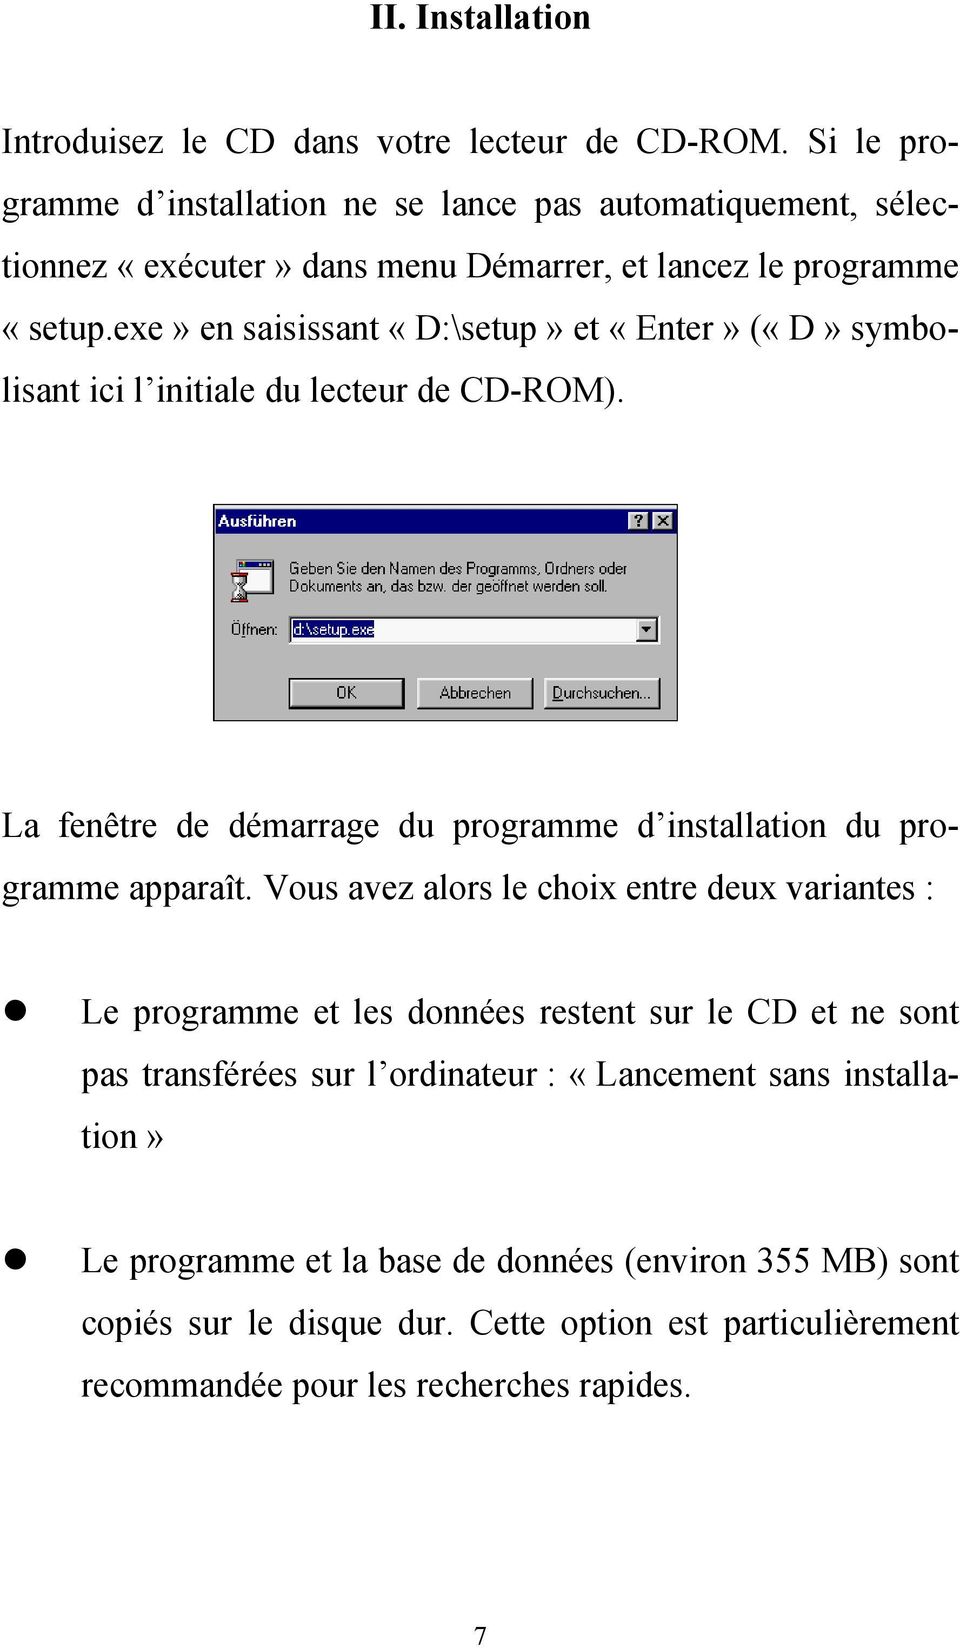 exe» en saisissant «D:\setup» et «Enter» («D» symbolisant ici l initiale du lecteur de CD-ROM). La fenêtre de démarrage du programme d installation du programme apparaît.